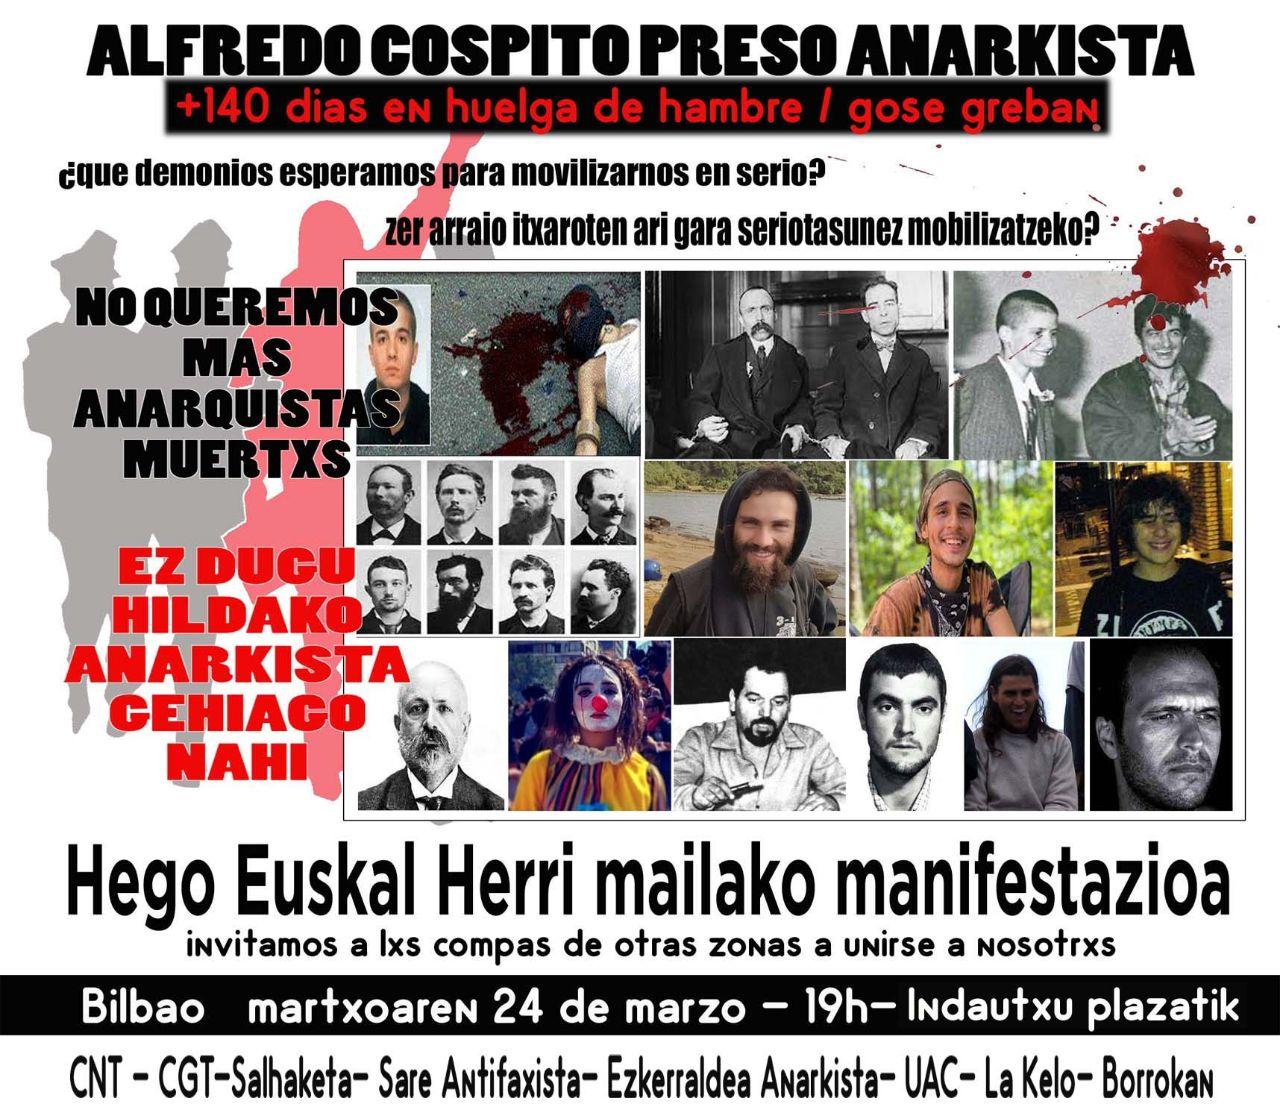 Bilbao: convocatoria a manifestación solidaria con Alfredo Cospito el 24 de marzo